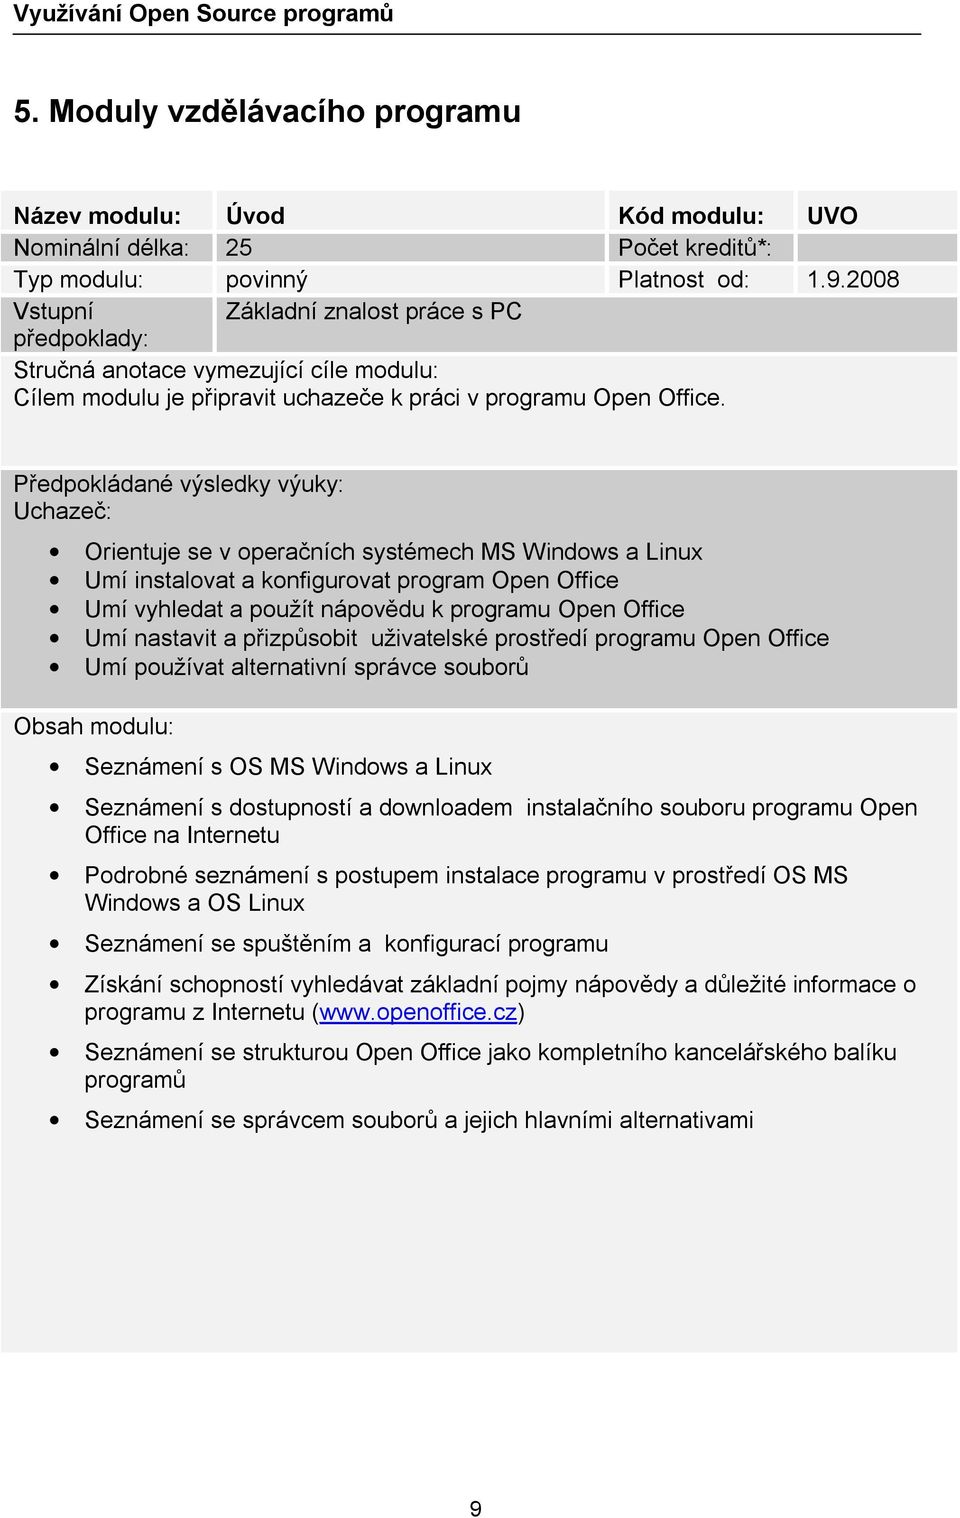 Předpokládané výsledky výuky: Uchazeč: Orientuje se v operačních systémech MS Windows a Linux Umí instalovat a konfigurovat program Open Office Umí vyhledat a použít nápovědu k programu Open Office